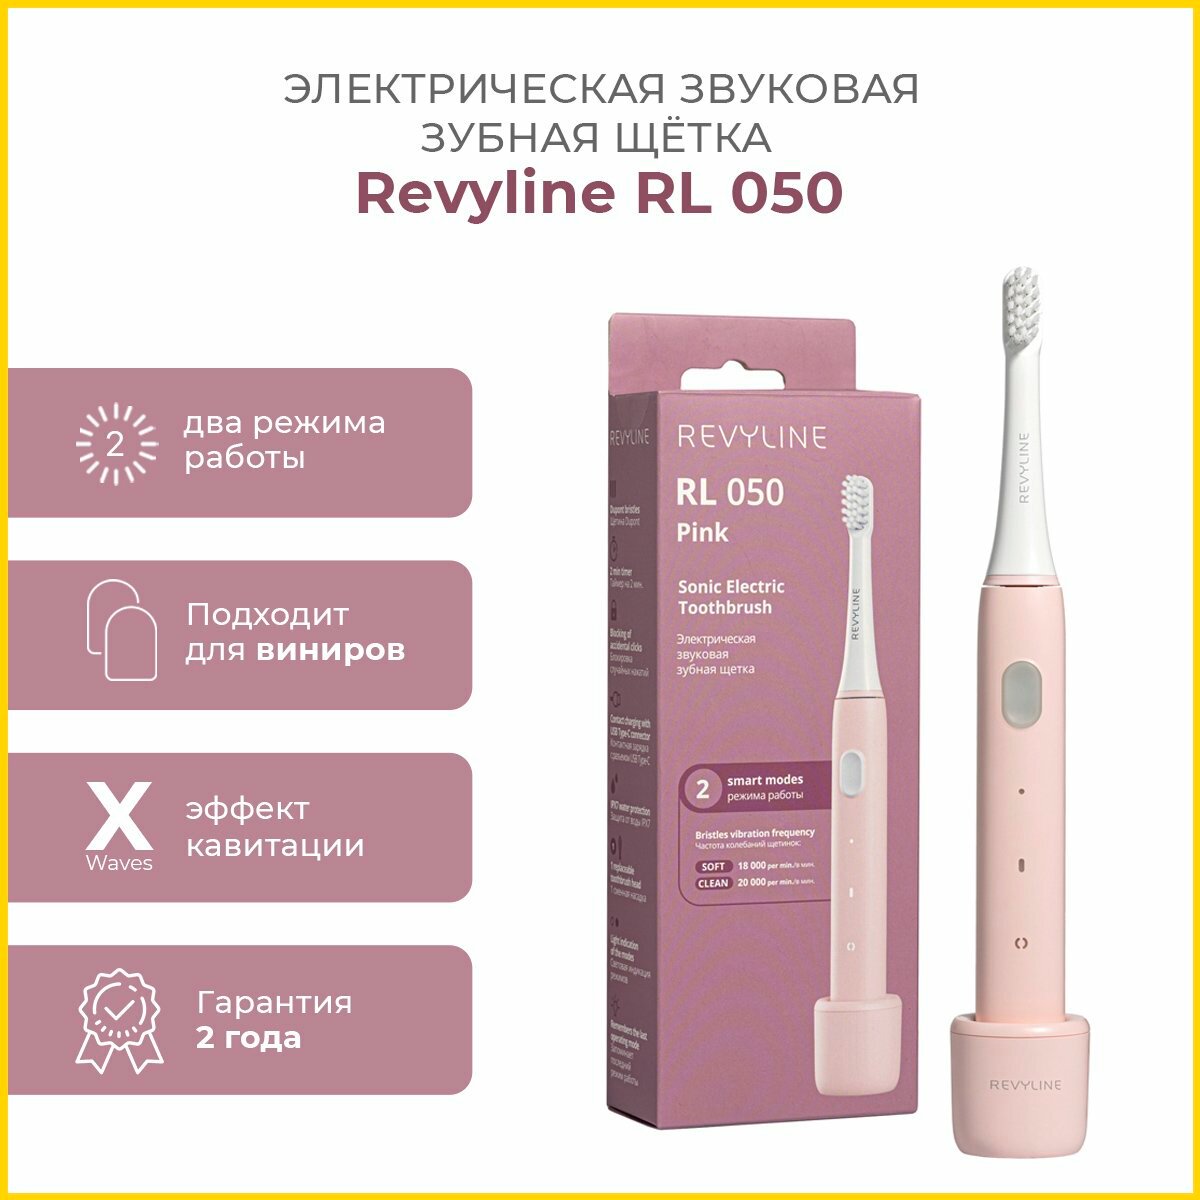 Электрическая звуковая щетка Revyline RL 050, розовая, Ревилайн